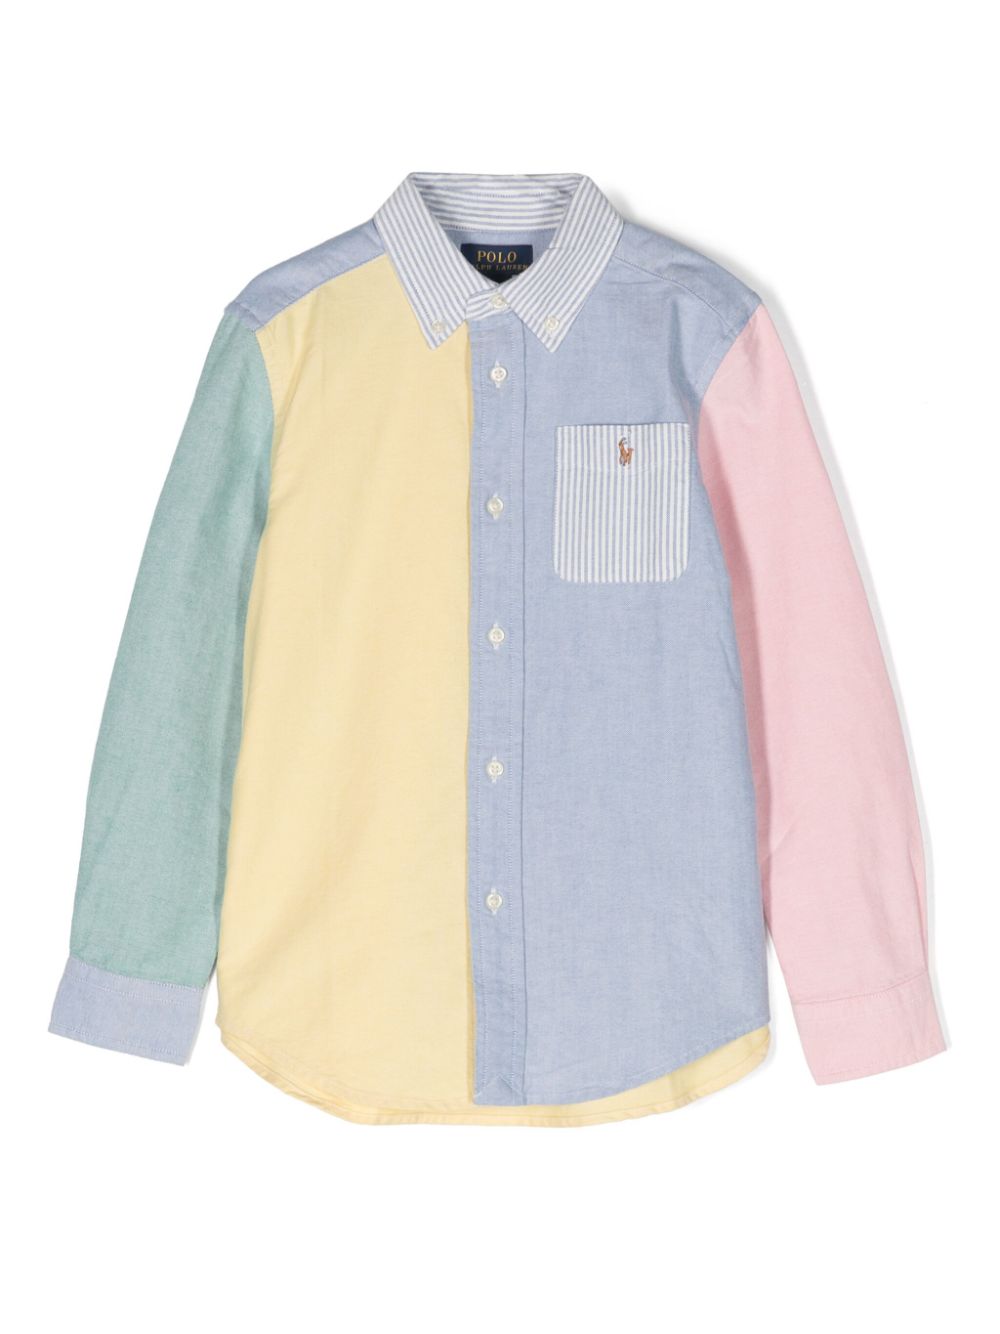 Camicia multicolore per bambino con logo